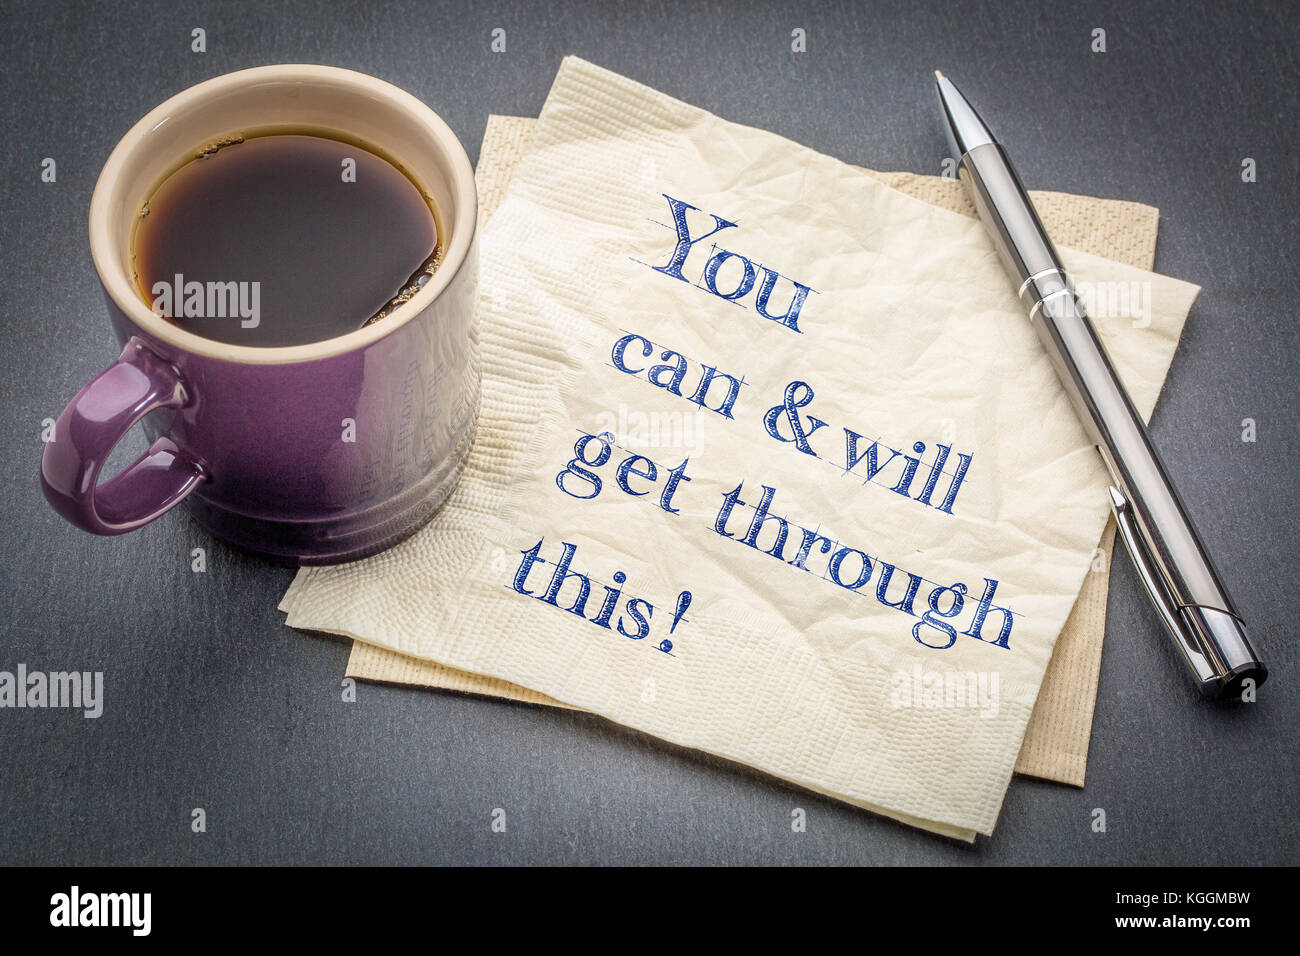 Sie können und werden durch sie erhalten - positive Handschrift auf eine Serviette mit Tasse Kaffee gegen grauen Schiefer Hintergrund Stockfoto